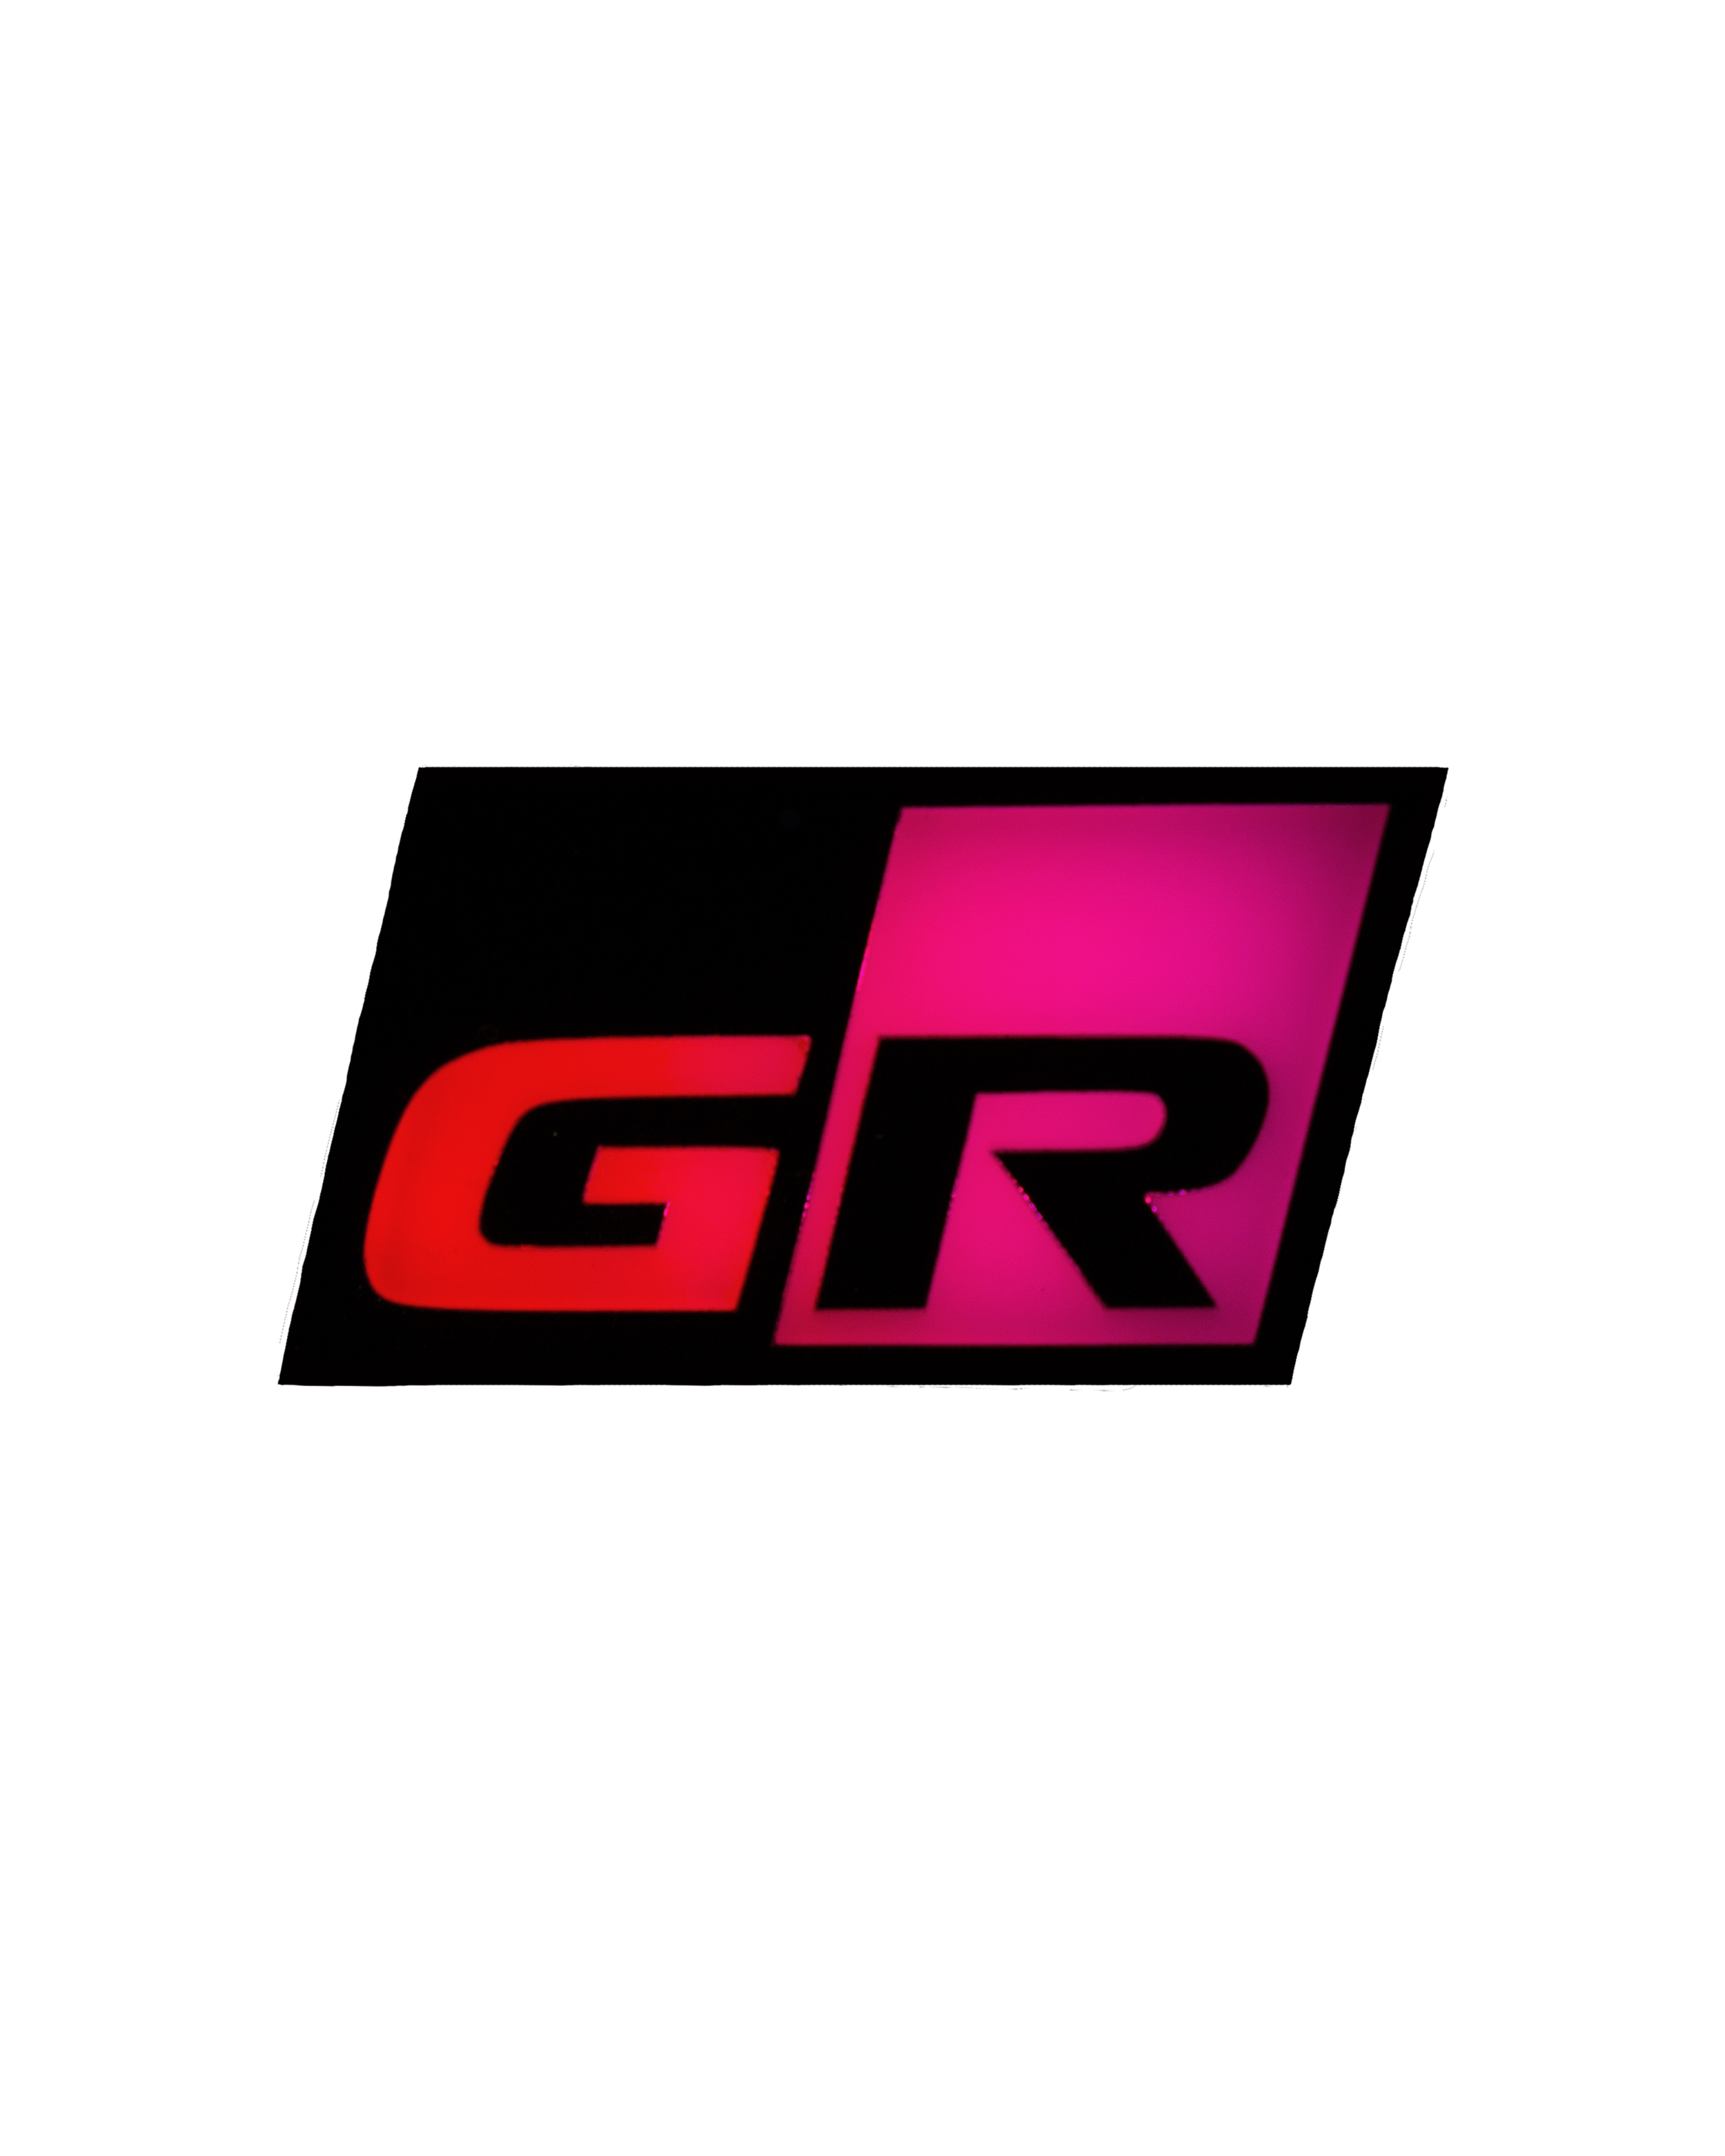 Lit Logos GR Badge V2